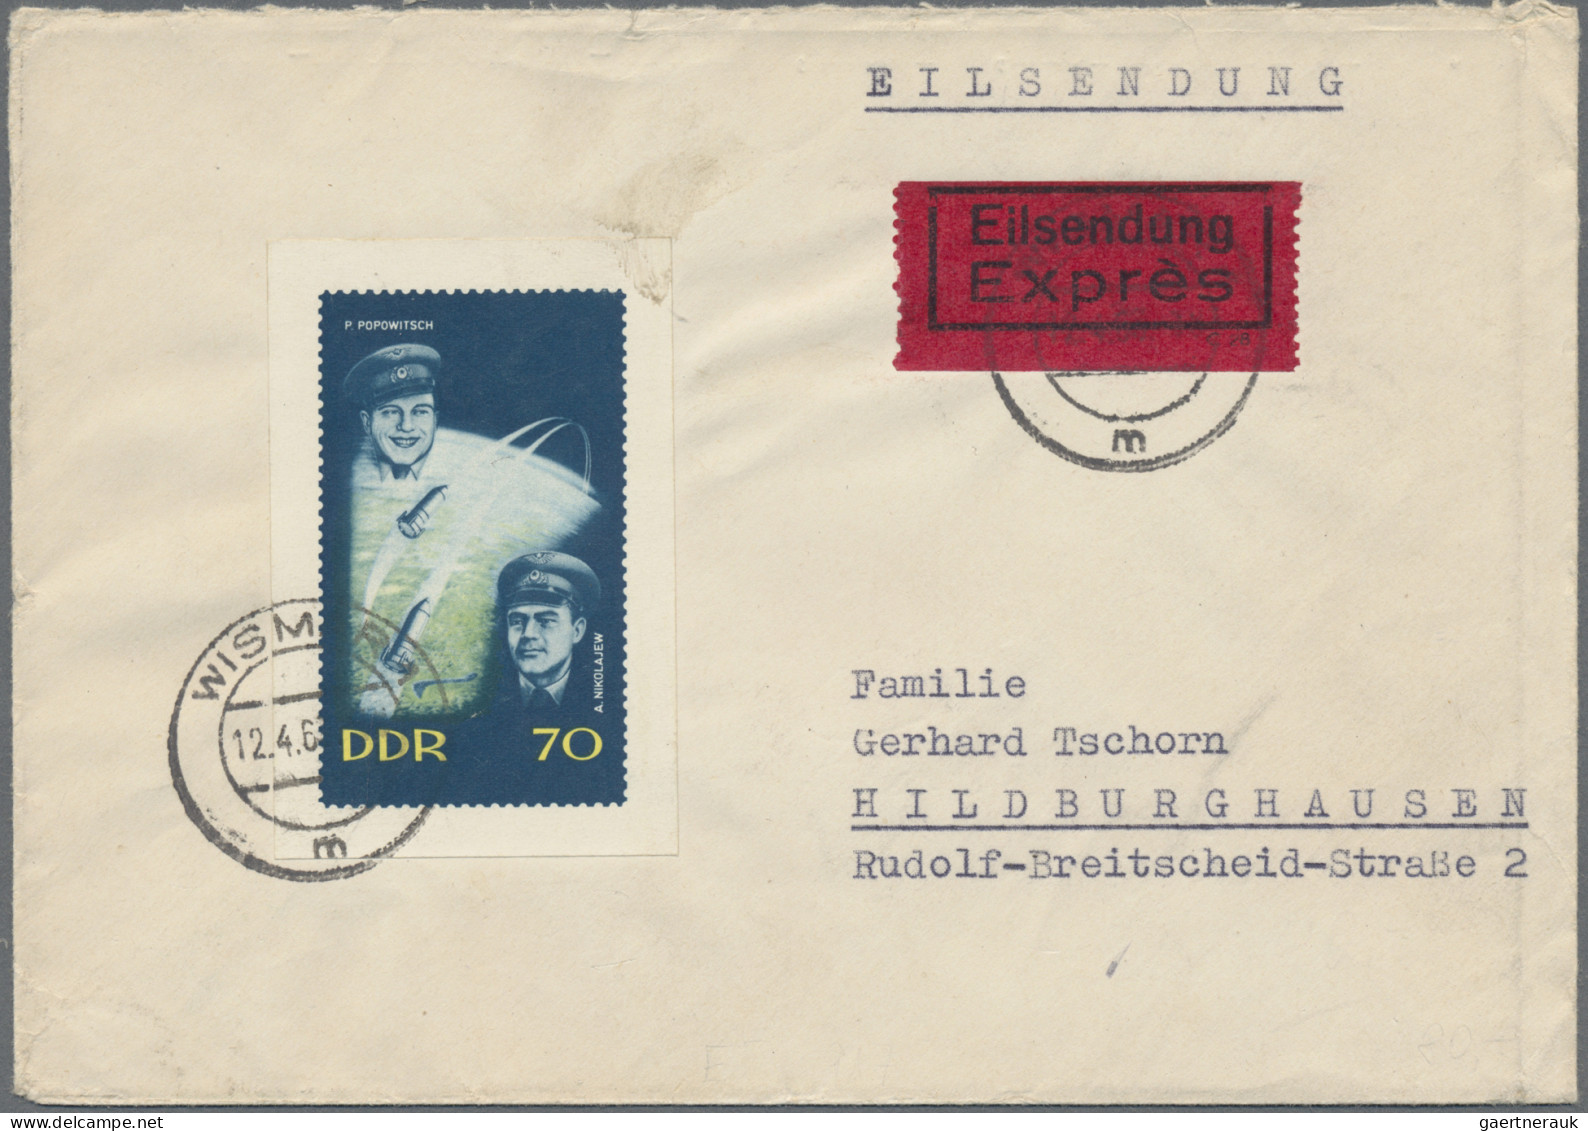 DDR: 1950/1964, Partie von 27 Briefen und Karten mit interessanten Frankaturen d